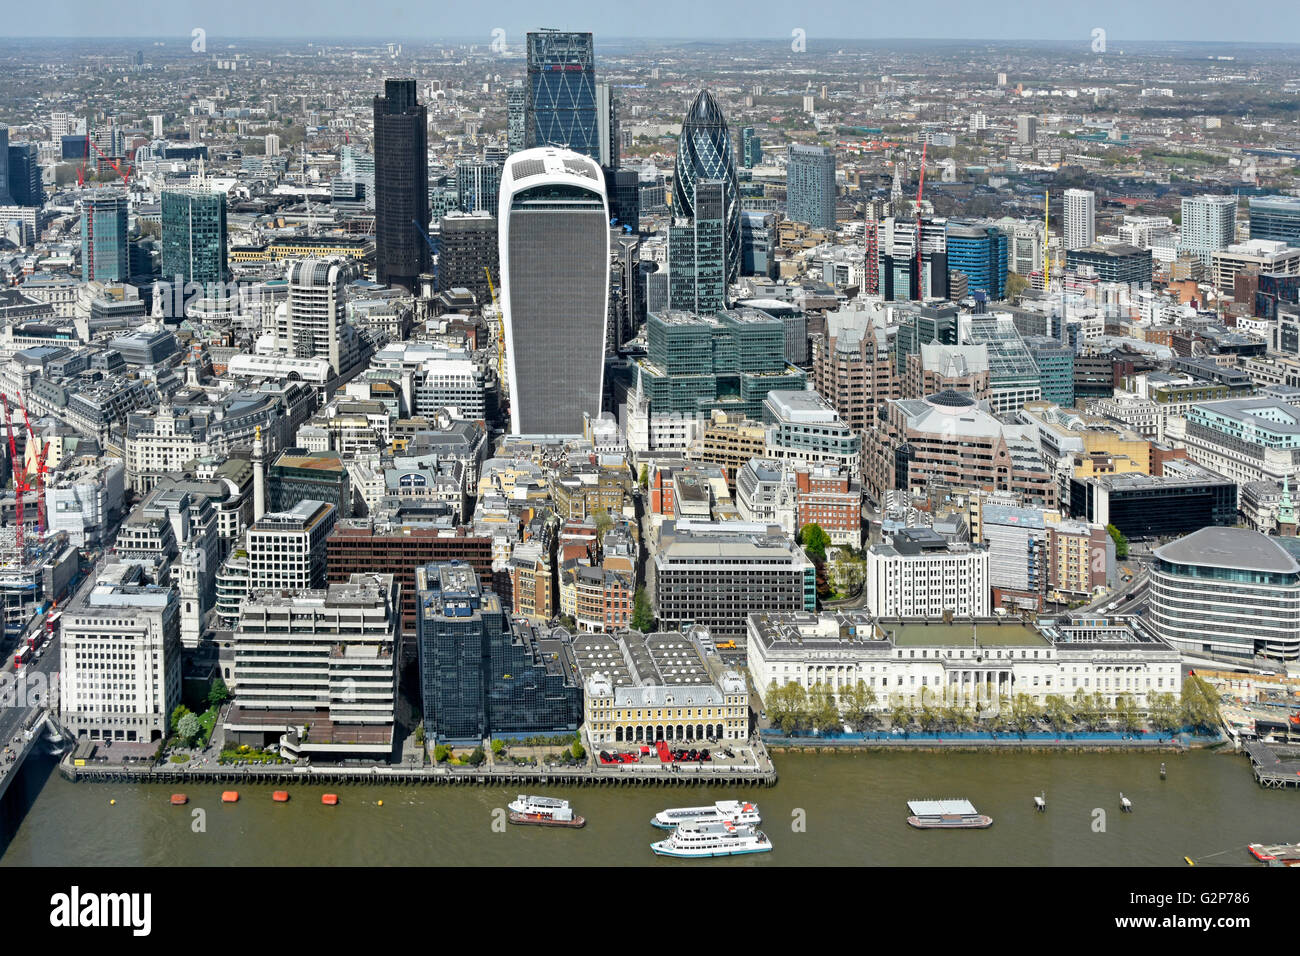 Ville de London landmarks vue aérienne du dessus vers le bas à la ville de Londres au paysage urbain gratte-ciel moderne dans un paysage urbain Banque D'Images